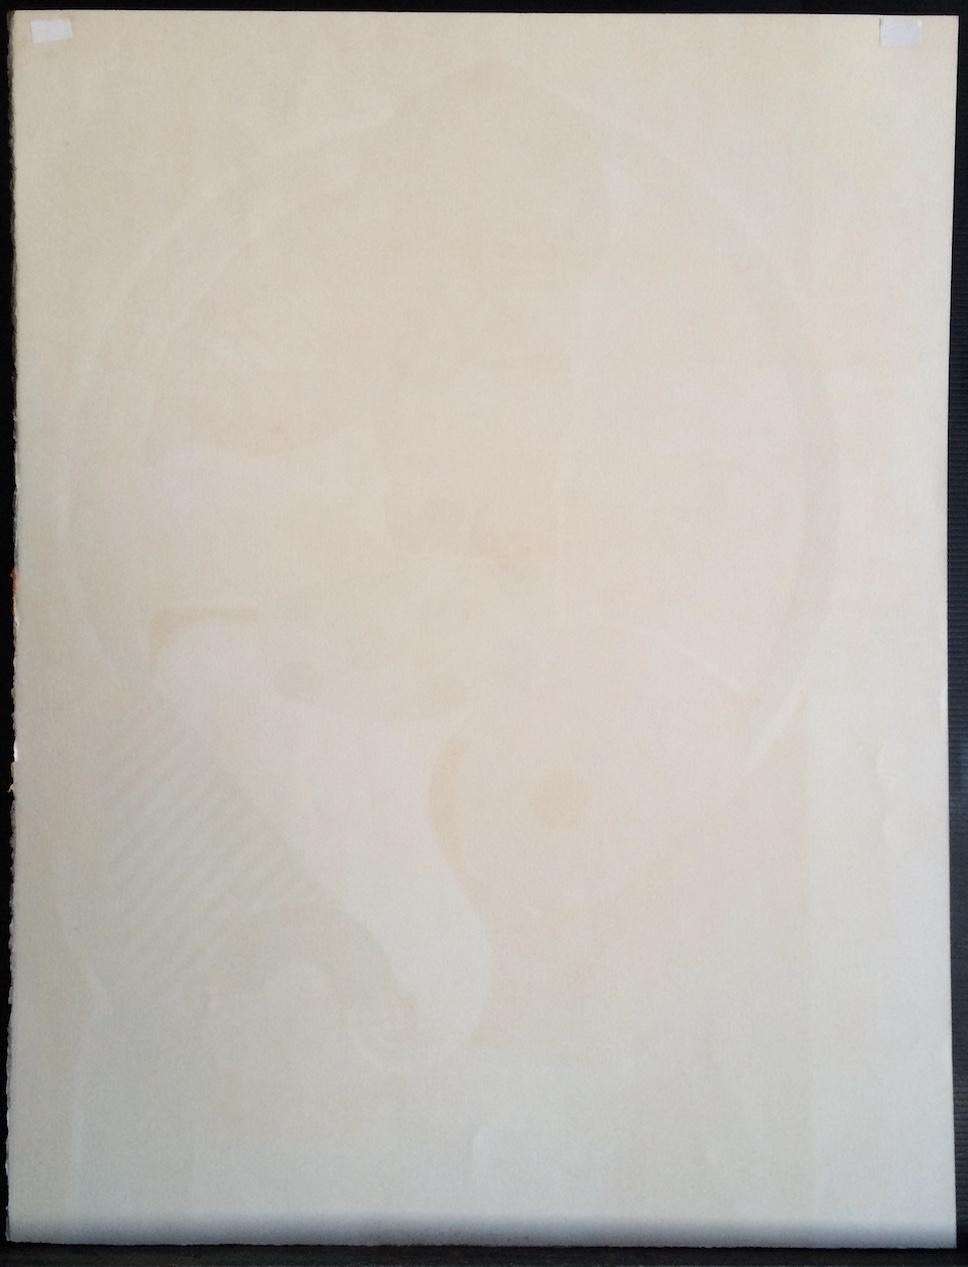 FEMME DÉNUDÉE ist eine originale, handgezeichnete Steinlithografie des französischen Künstlers Michel Potier, gedruckt in Paris in den 1970er Jahren im Handlithografie-Verfahren auf 100% säurefreiem Arches-Papier. FEMME DÉNUDÉE zeigt ein modernes